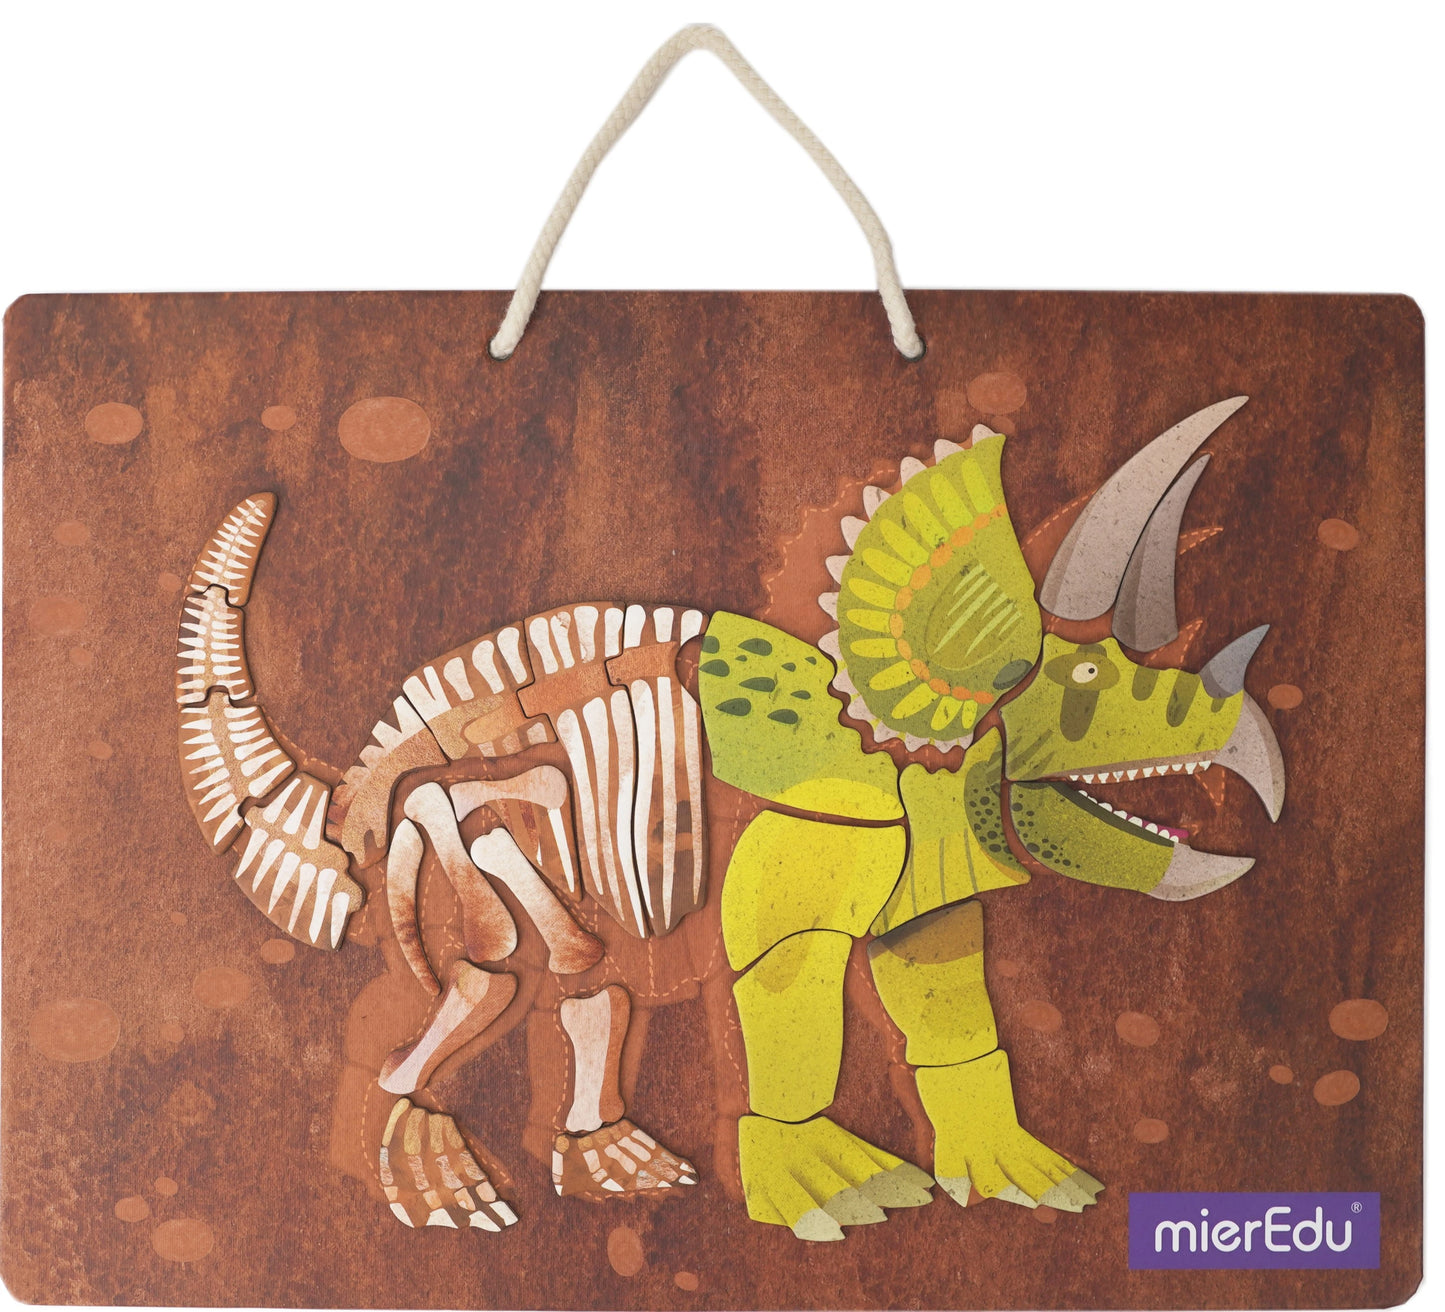 mierEdu Magnet Pad - Triceratops foerdert logisches Denke und Motorik und Konzentration, Ideal für Zuhause und als Reisespiel für Kinder